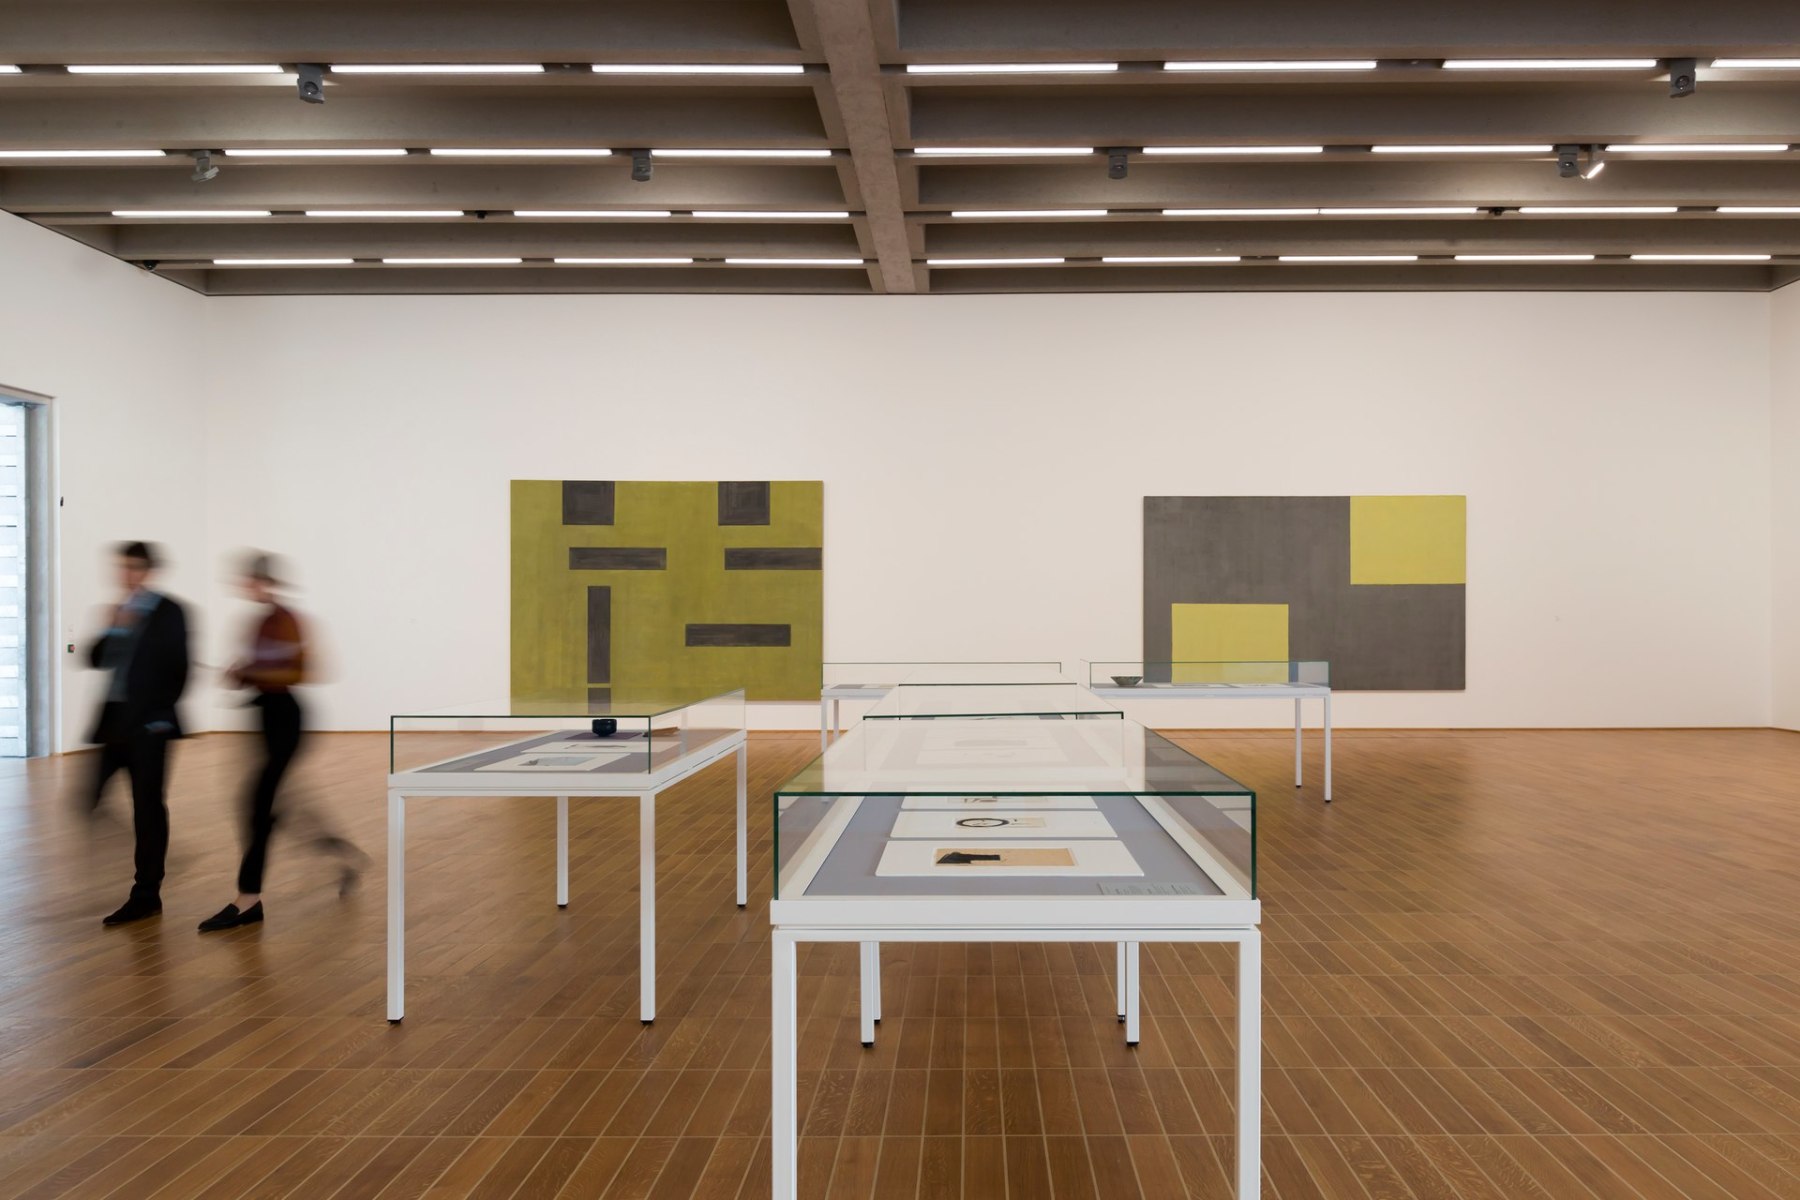 Helmut Federle - Viewing Room - Peter Blum Gallery, New York